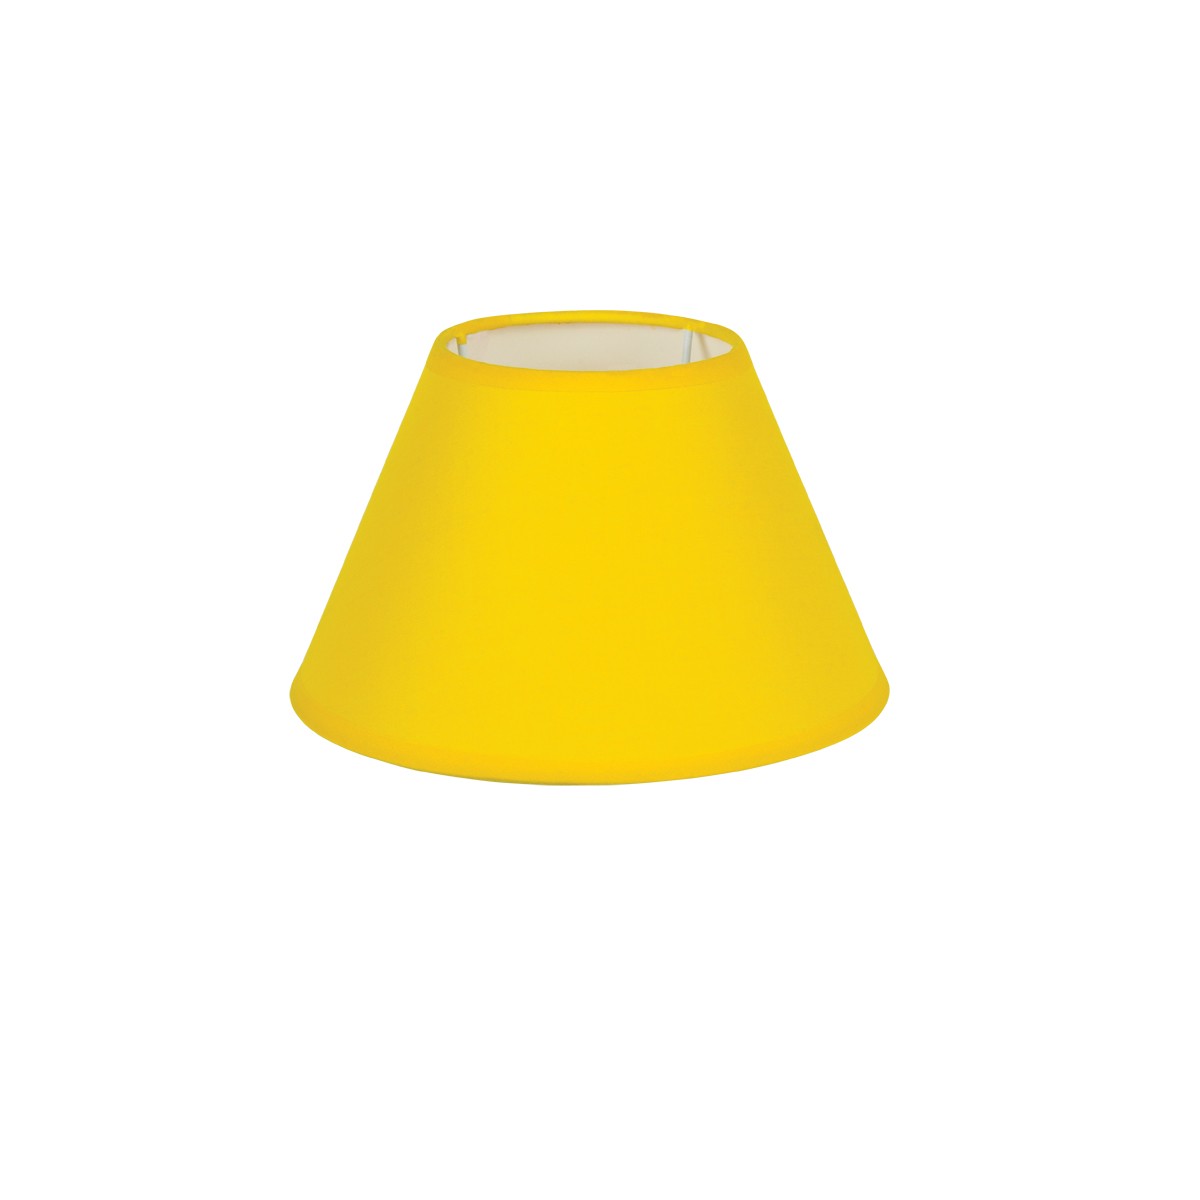 Καπέλο Μονόχρωμο Στρογγυλό Φ20cm Κάτω Πλευρά -Σε Κίτρινο Χρώμα        VK/E27/E14/D20/Y